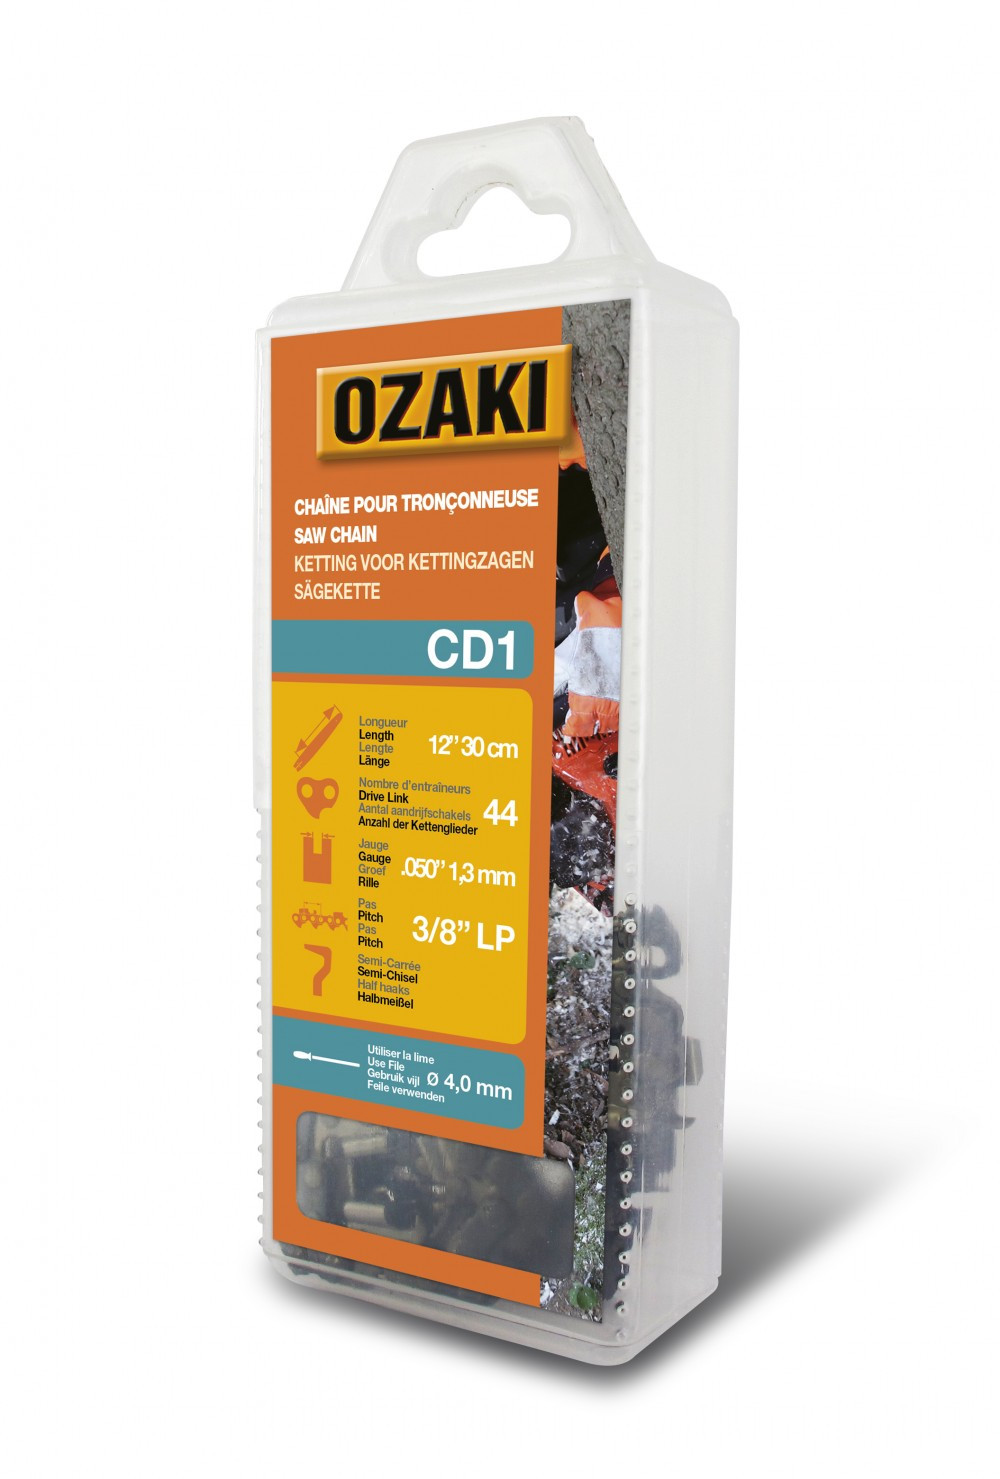 Chaîne de tronçonneuse OZAKI semi carrée: 3/8"LP .050 (1,3mm) 44 entraîneurs